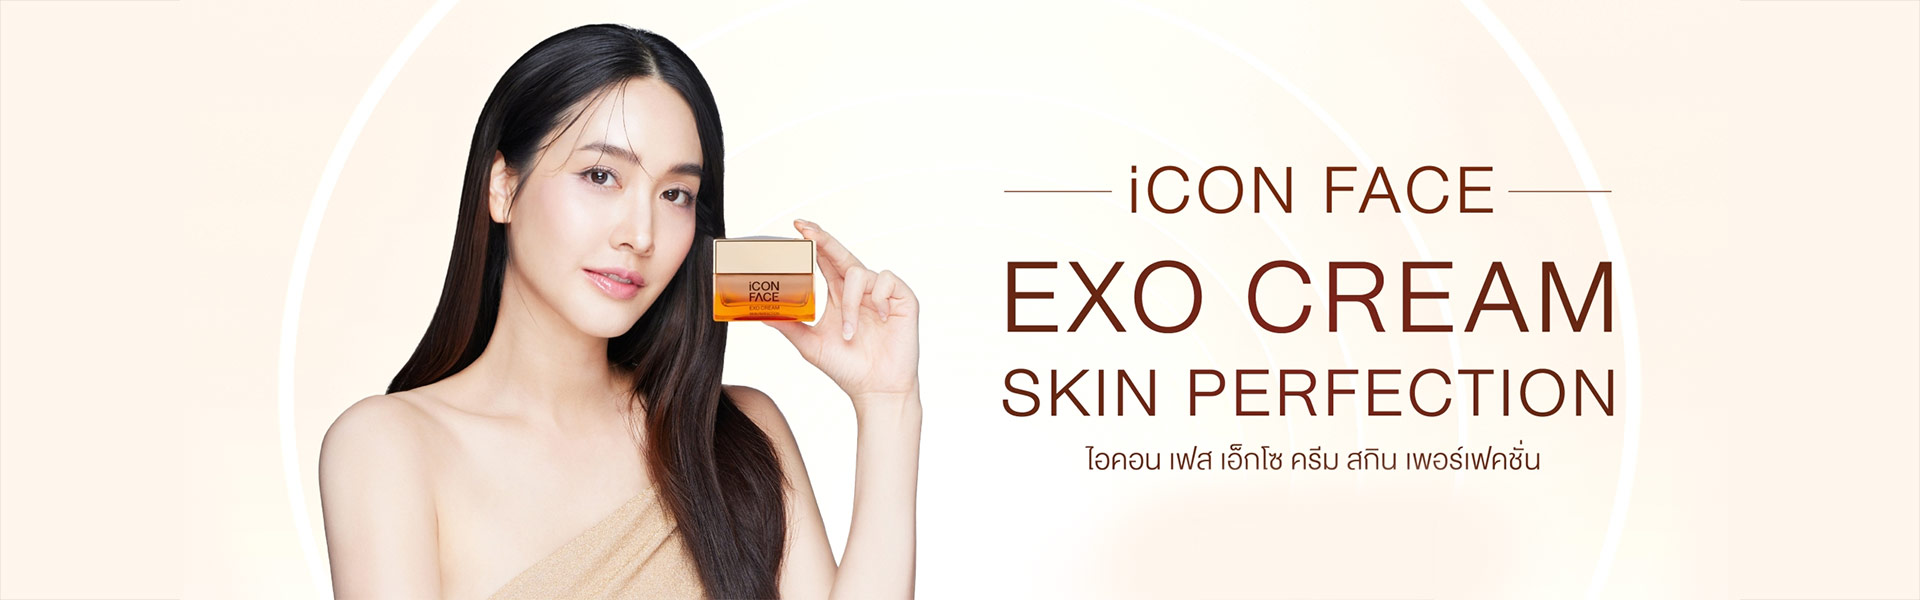 iCon Face Exo Cream